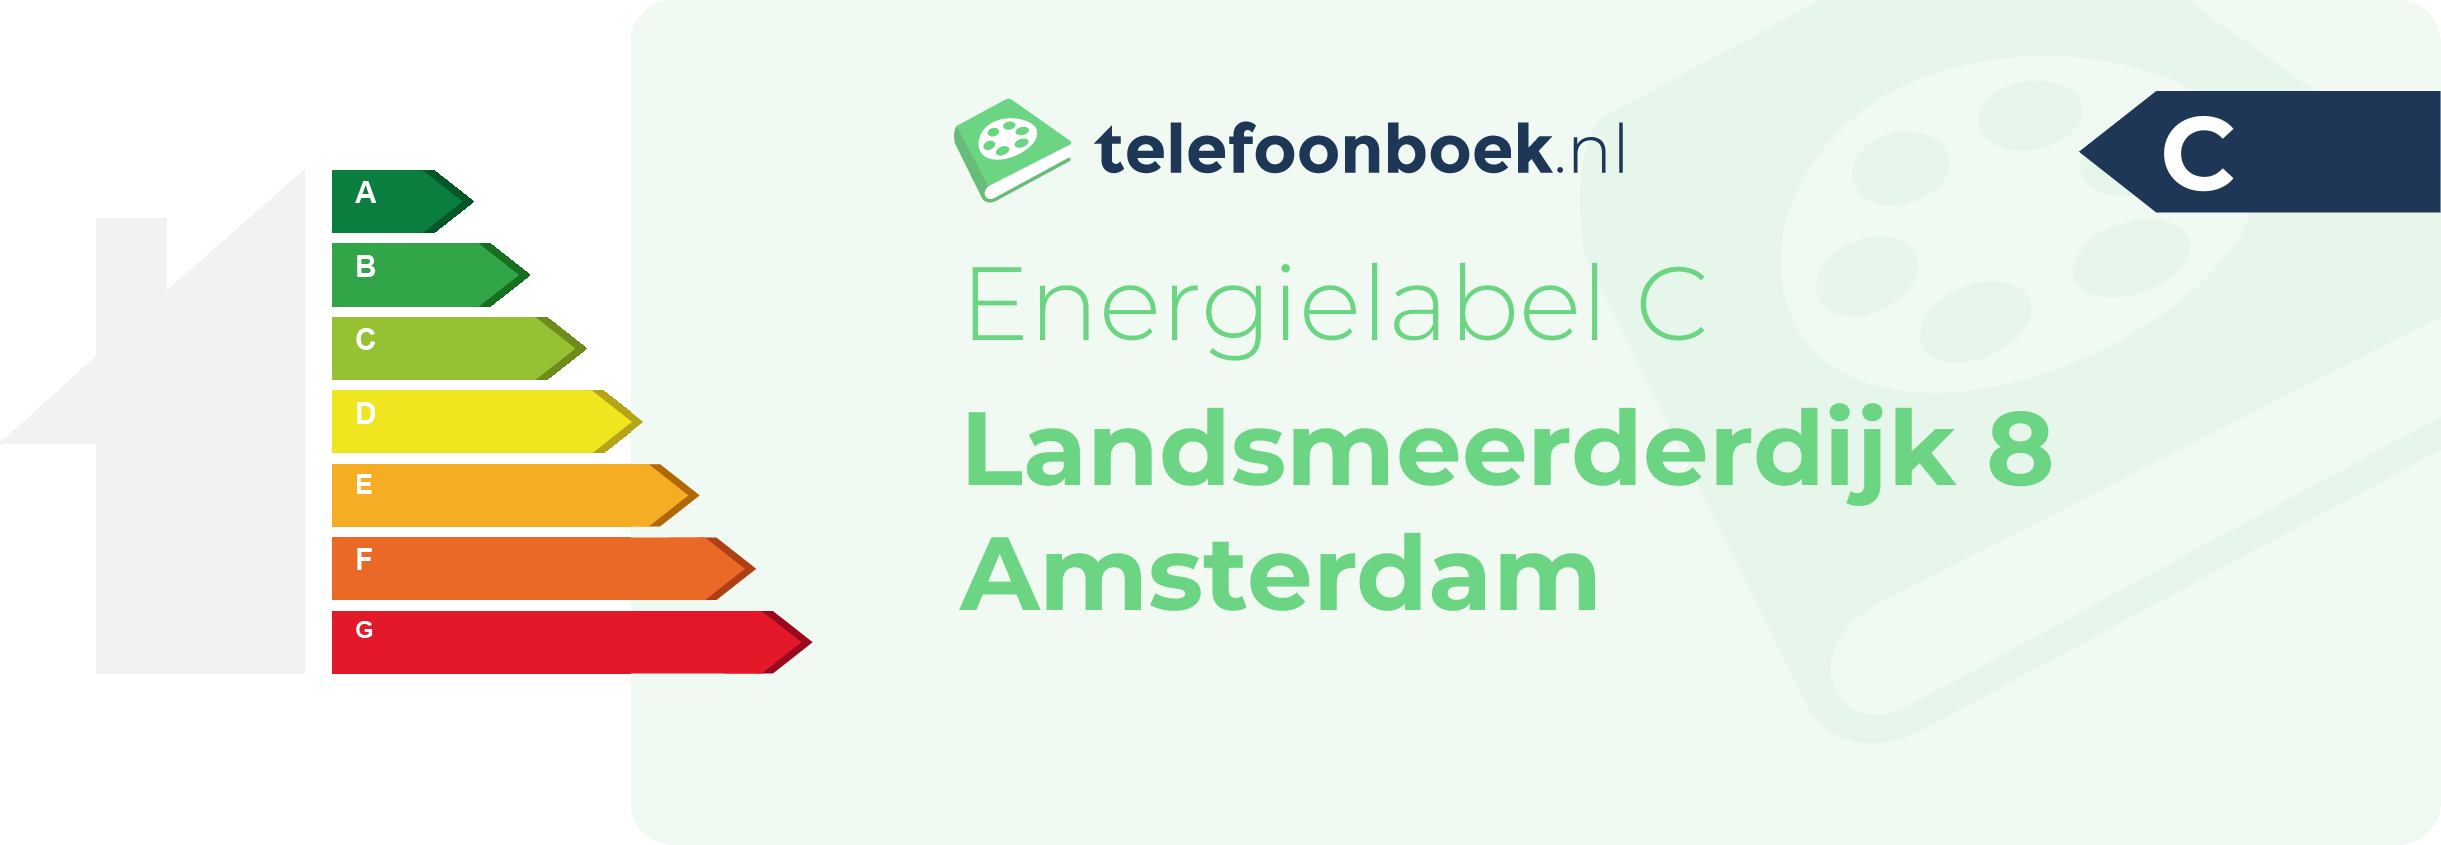 Energielabel Landsmeerderdijk 8 Amsterdam